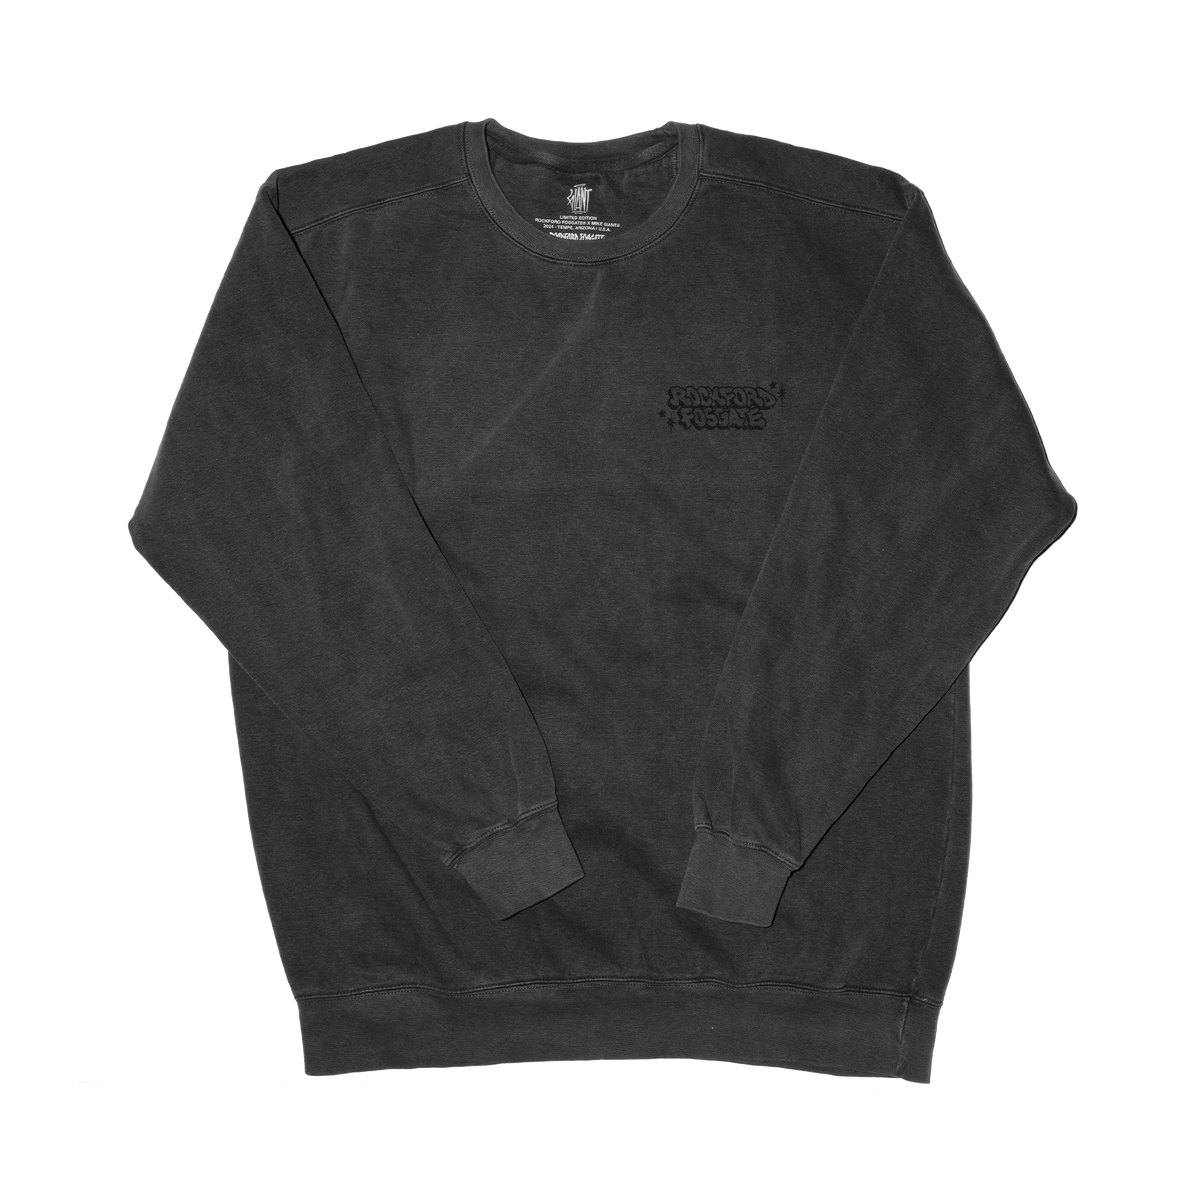 Mike Giant x Rockford Fosgate Sweatshirt: 3XL(POP-GIANTSS-XXXL)